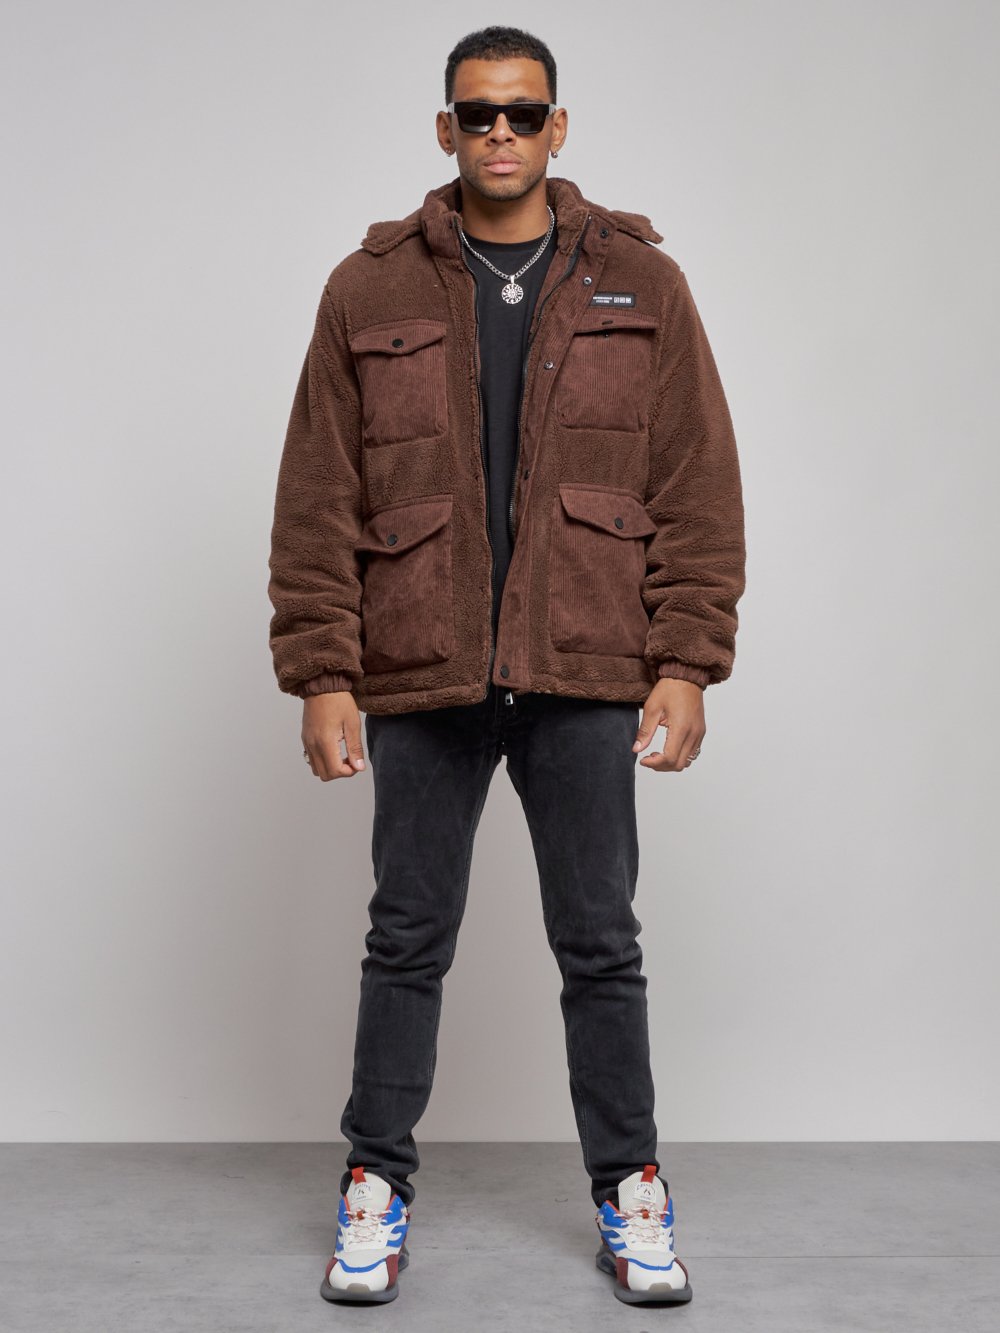 Плюшевая куртка мужская с капюшоном молодежная коричневого цвета 88636K